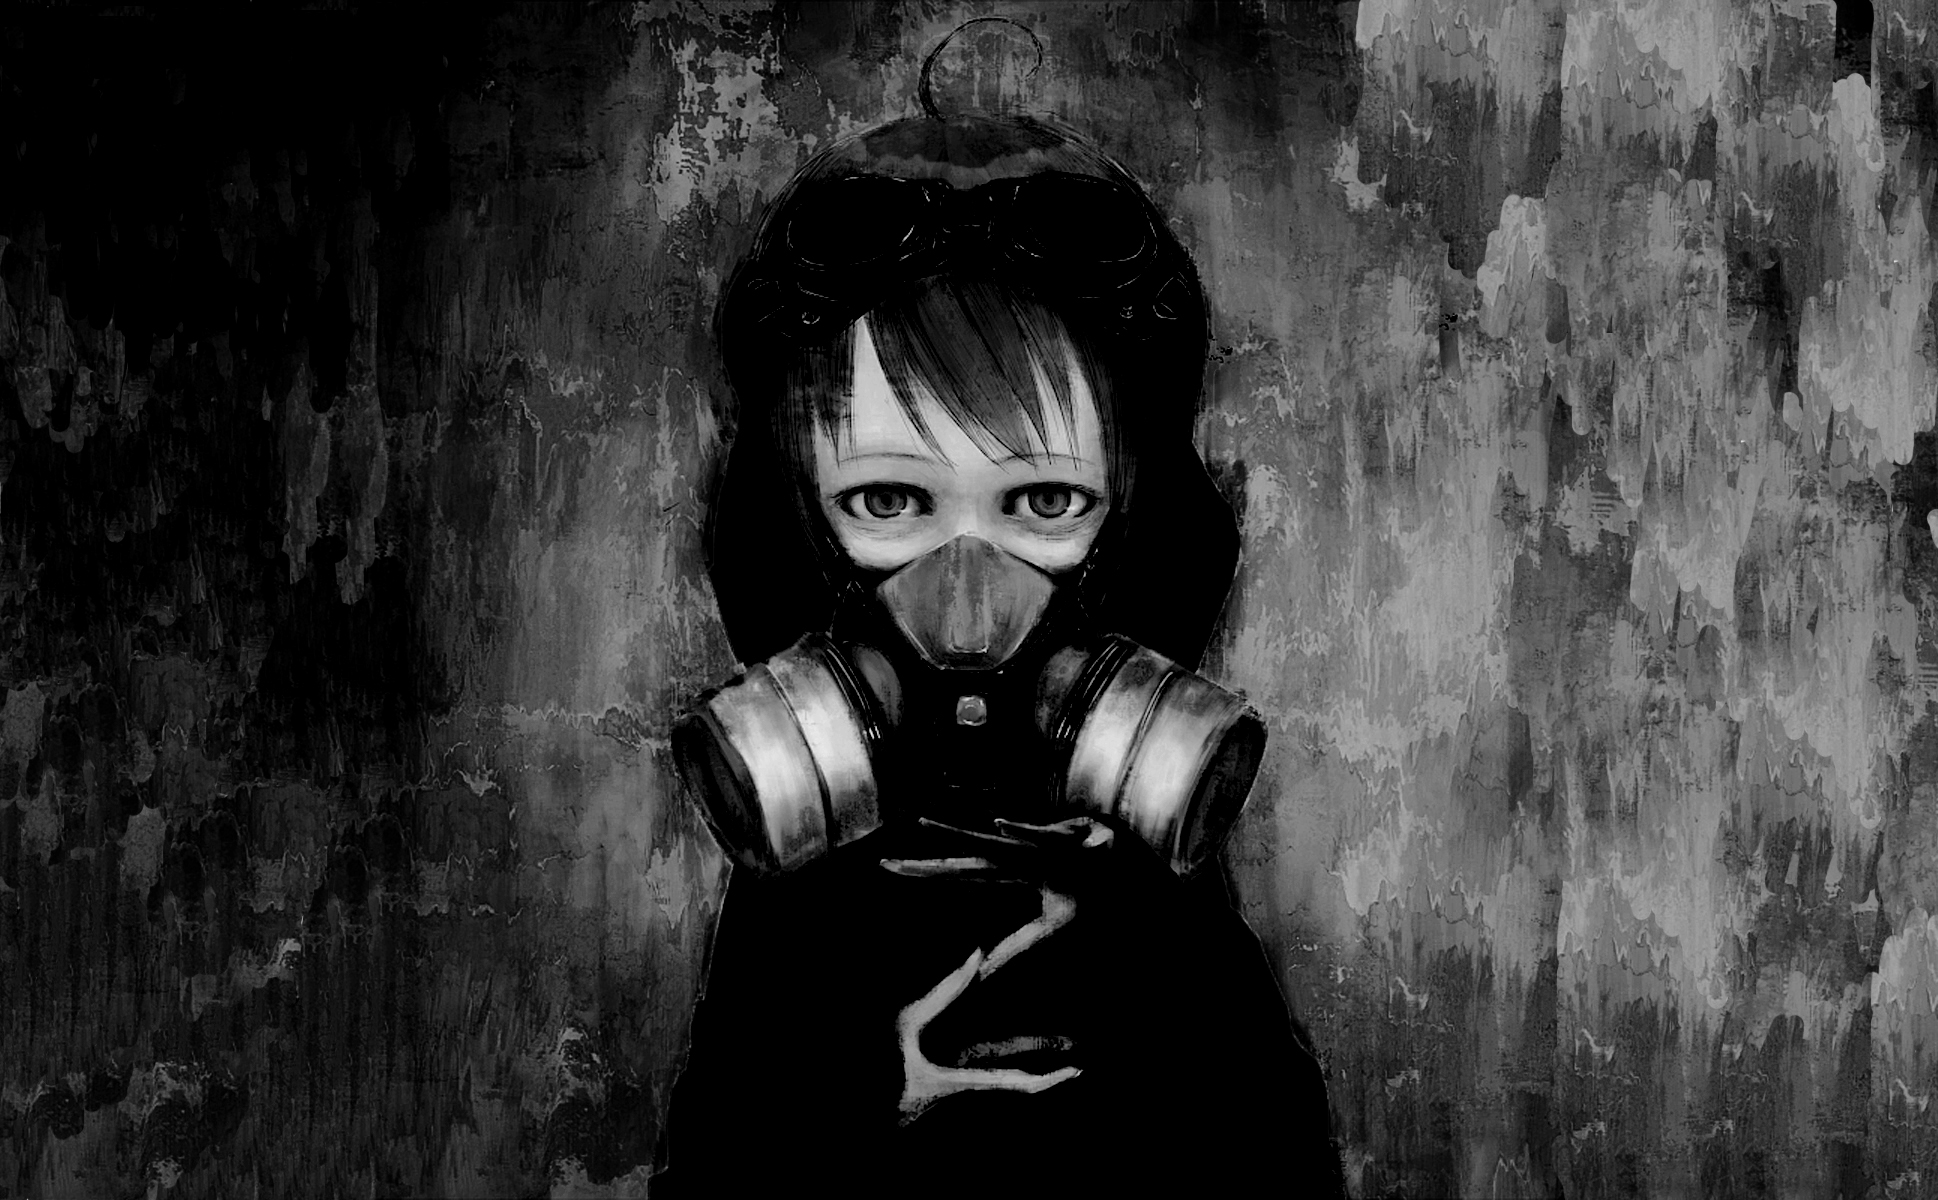 Anime 1938x1200 gas masks children anime digital art fantasy art illustration anime girls artwork black